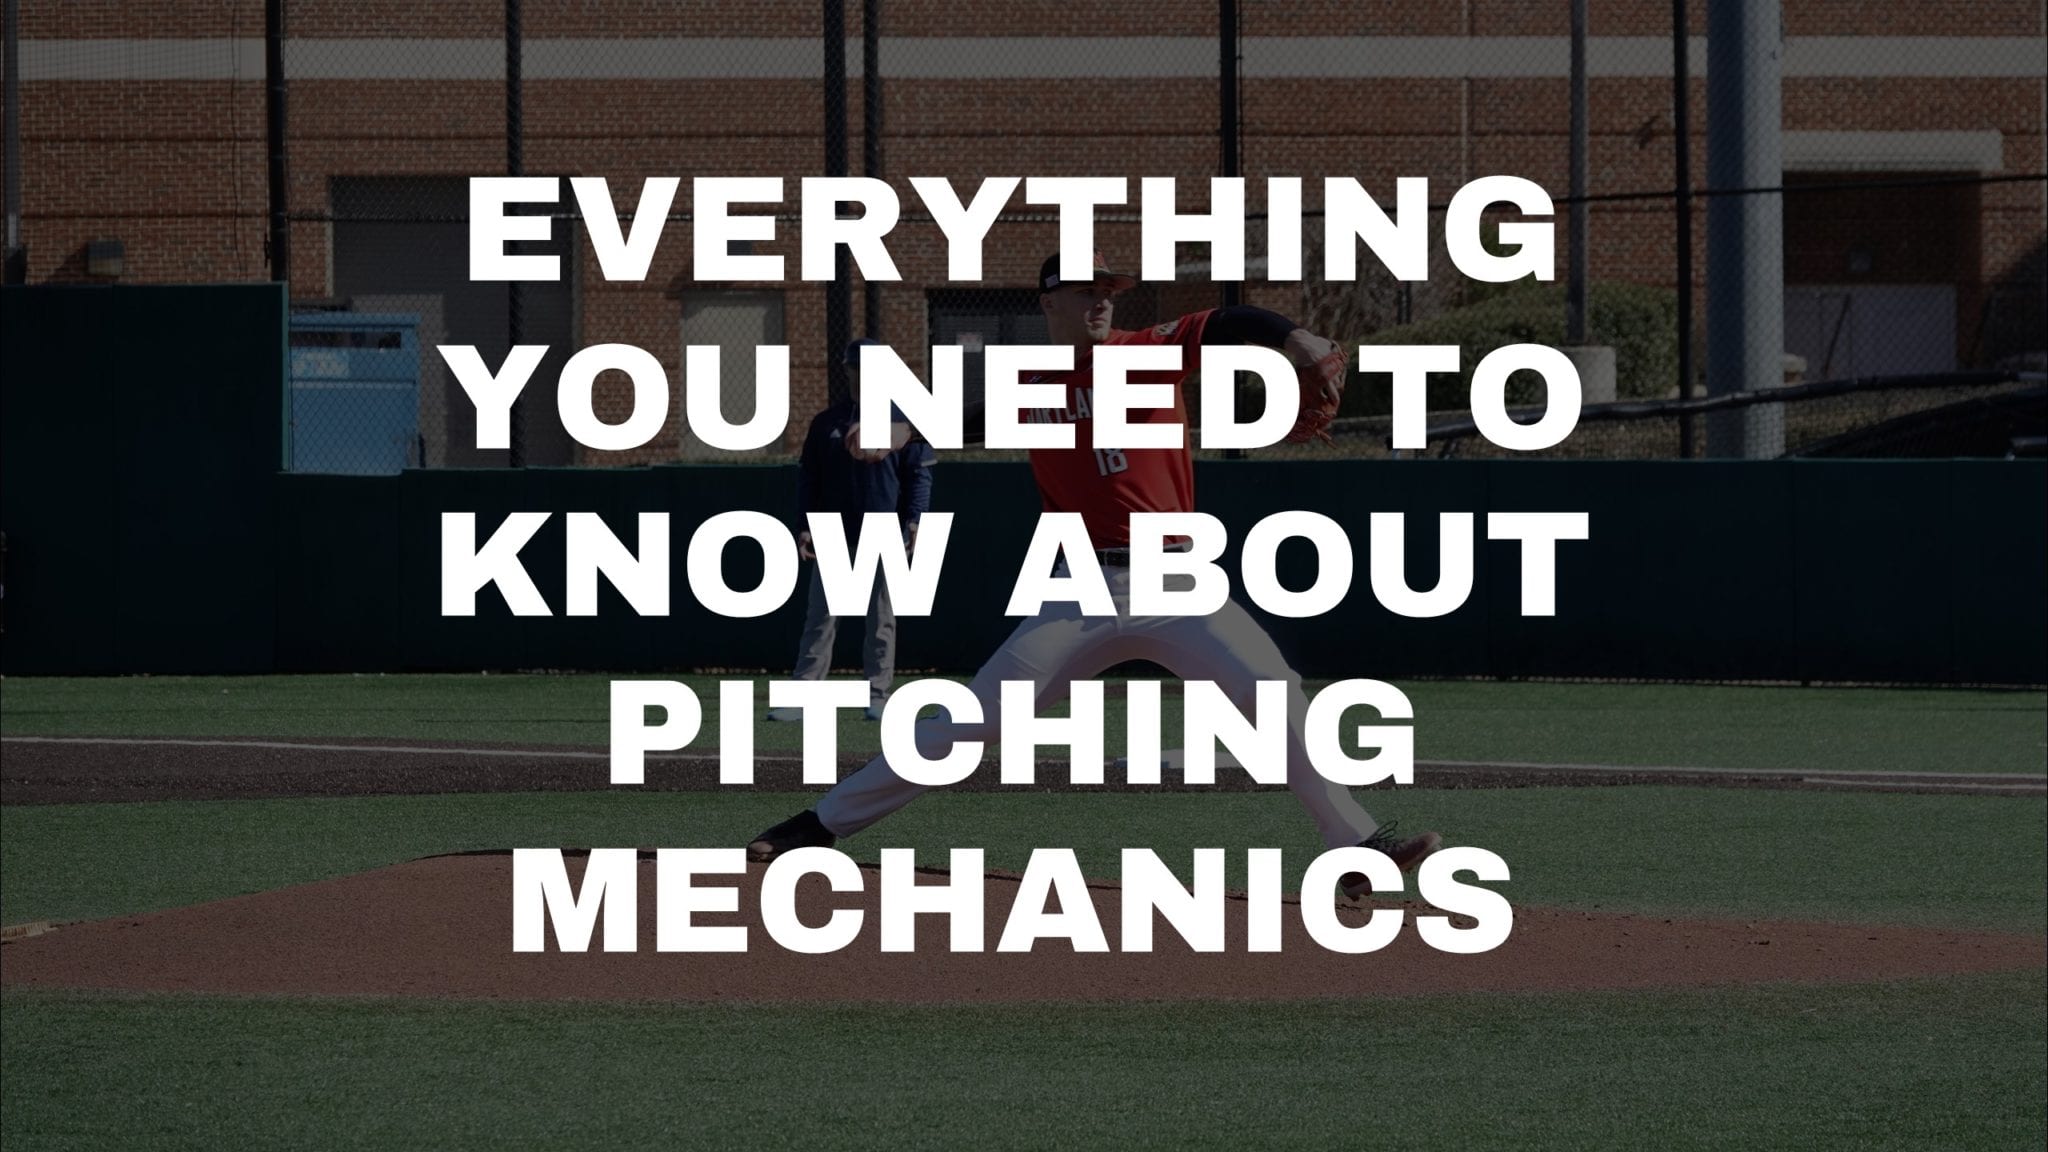 Baseball: Pitching - Windup and Stretch